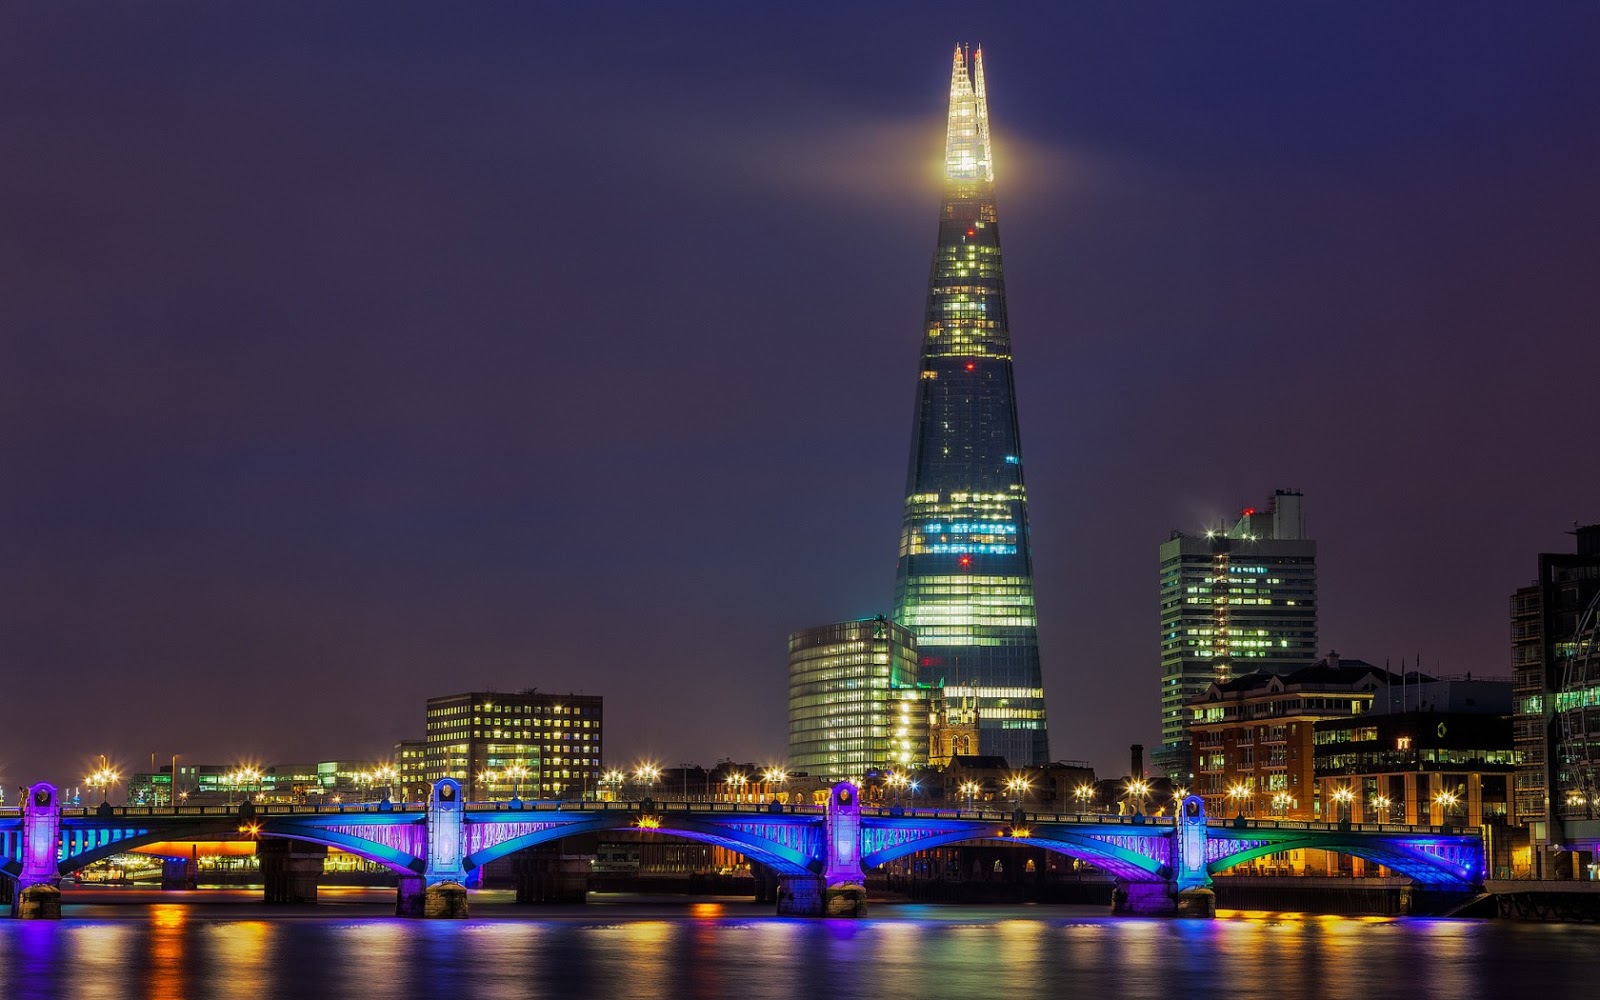 Fotos de La Ciudad de Londres en la Noche | Fotos e Imágenes en FOTOBLOG X